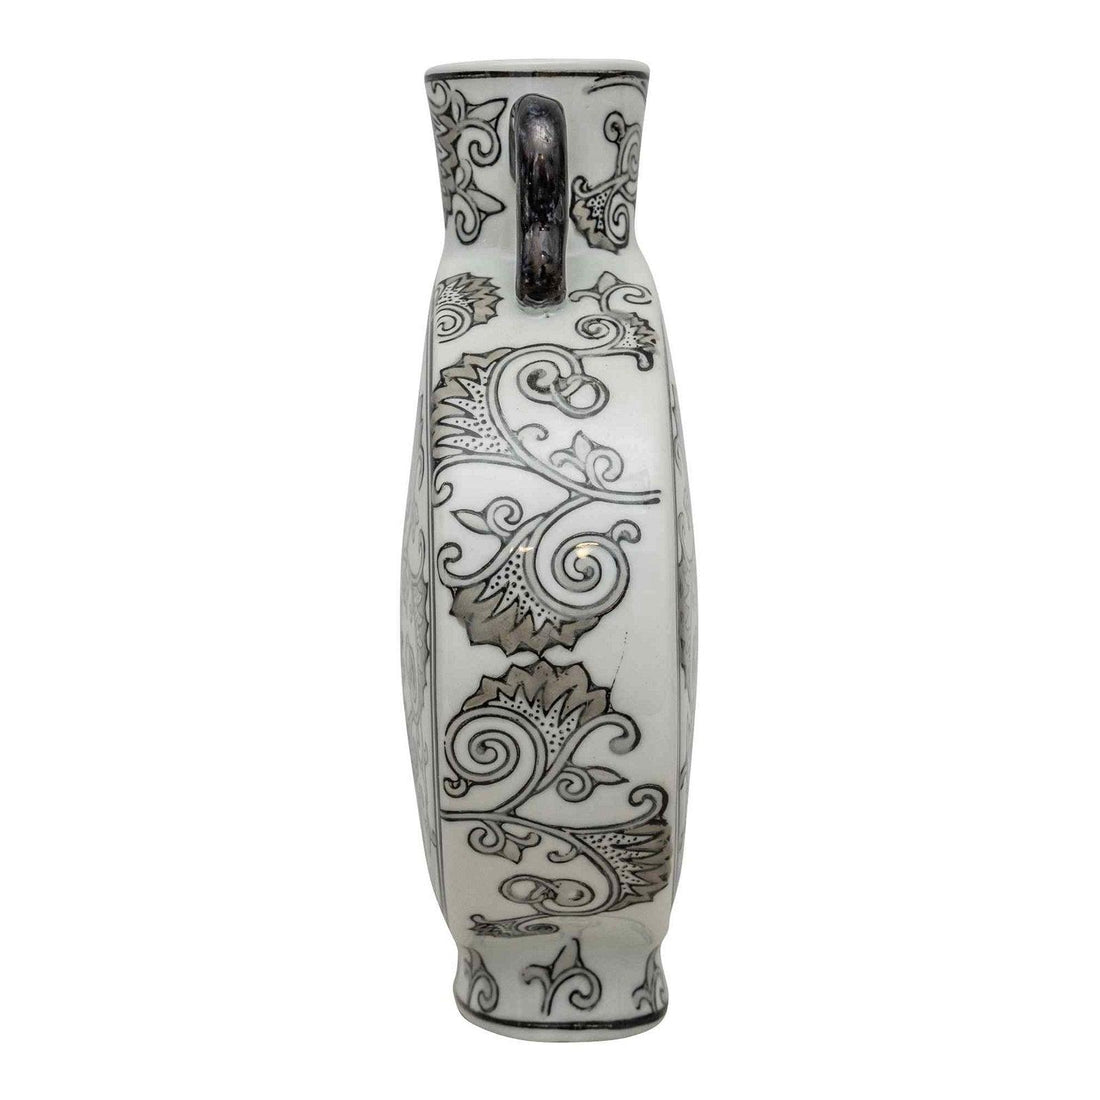 Angel Trumpet Inspired Hand Painted Black & White Vase - £59.99 - Vases 